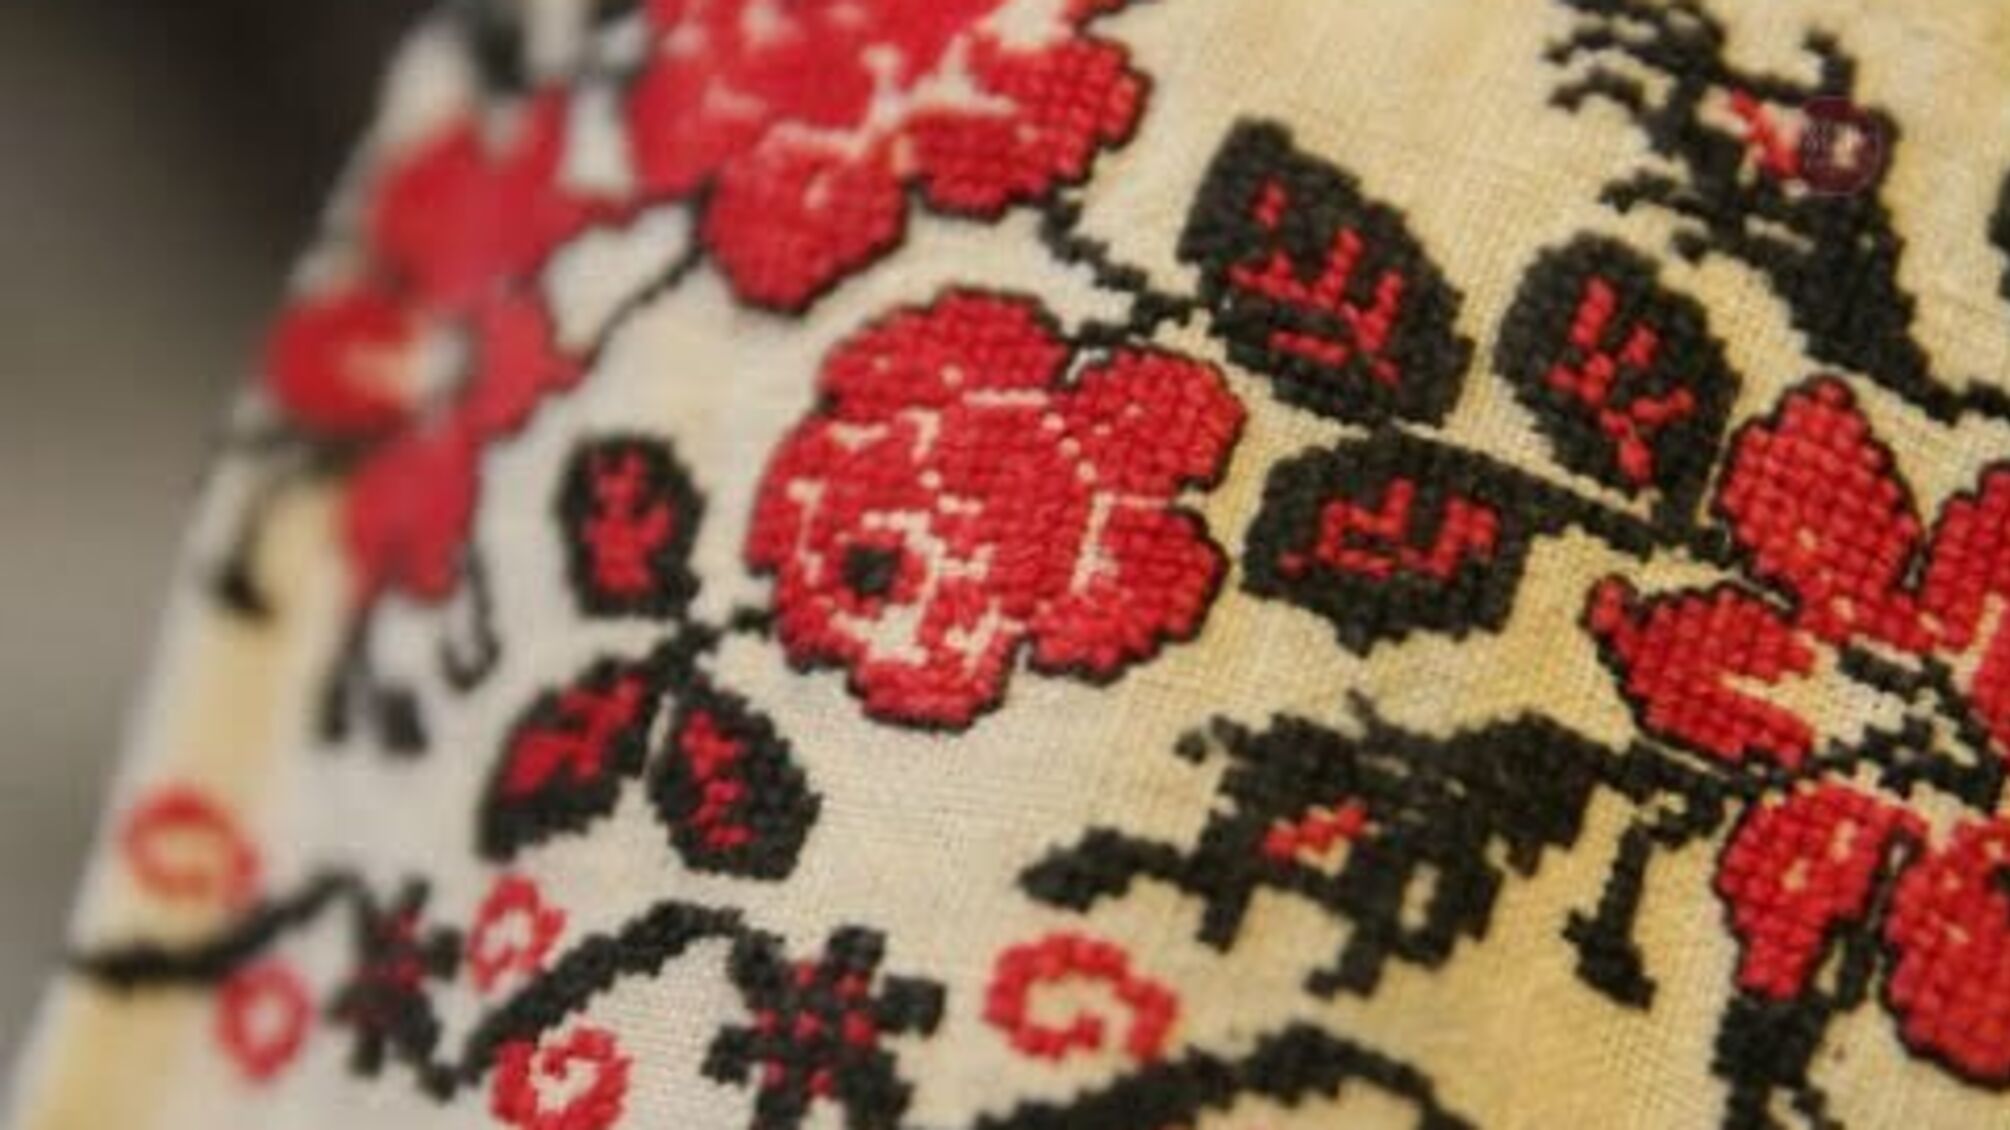 Традиційний одяг за півтора млн грн: в Укрзалізниці пояснили, навіщо їм вишиванки